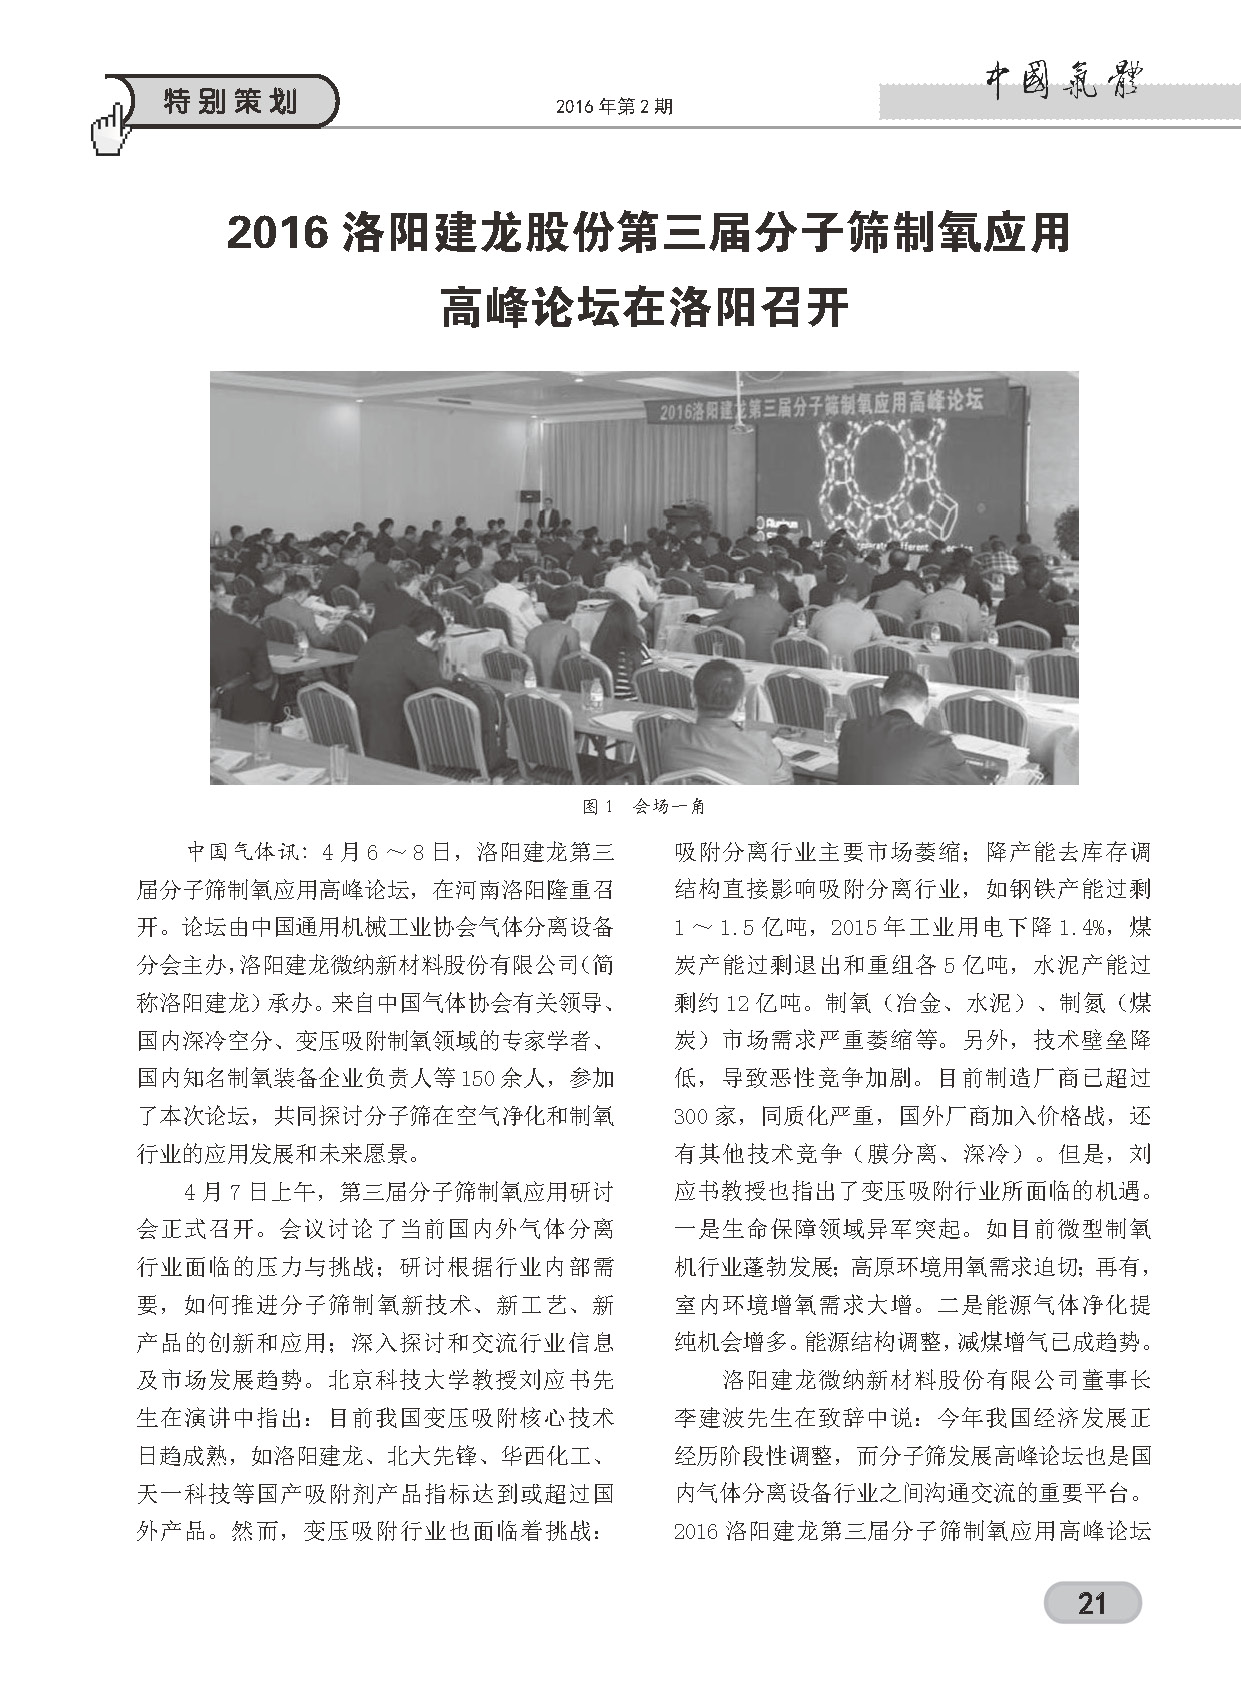 中國氣體雜志第二期特別策劃欄目對洛陽建龍第三屆分子篩制氧應用論壇進行報道